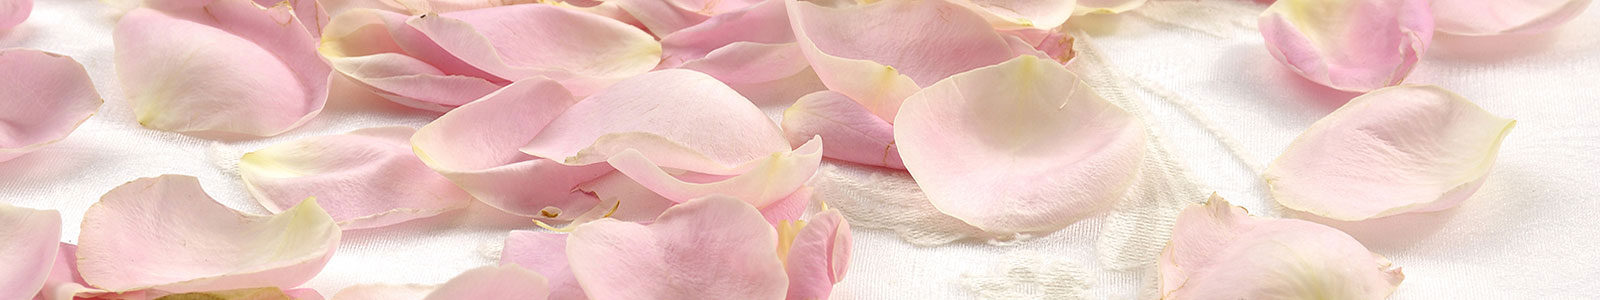 №1860 - Лепестки розовых роз